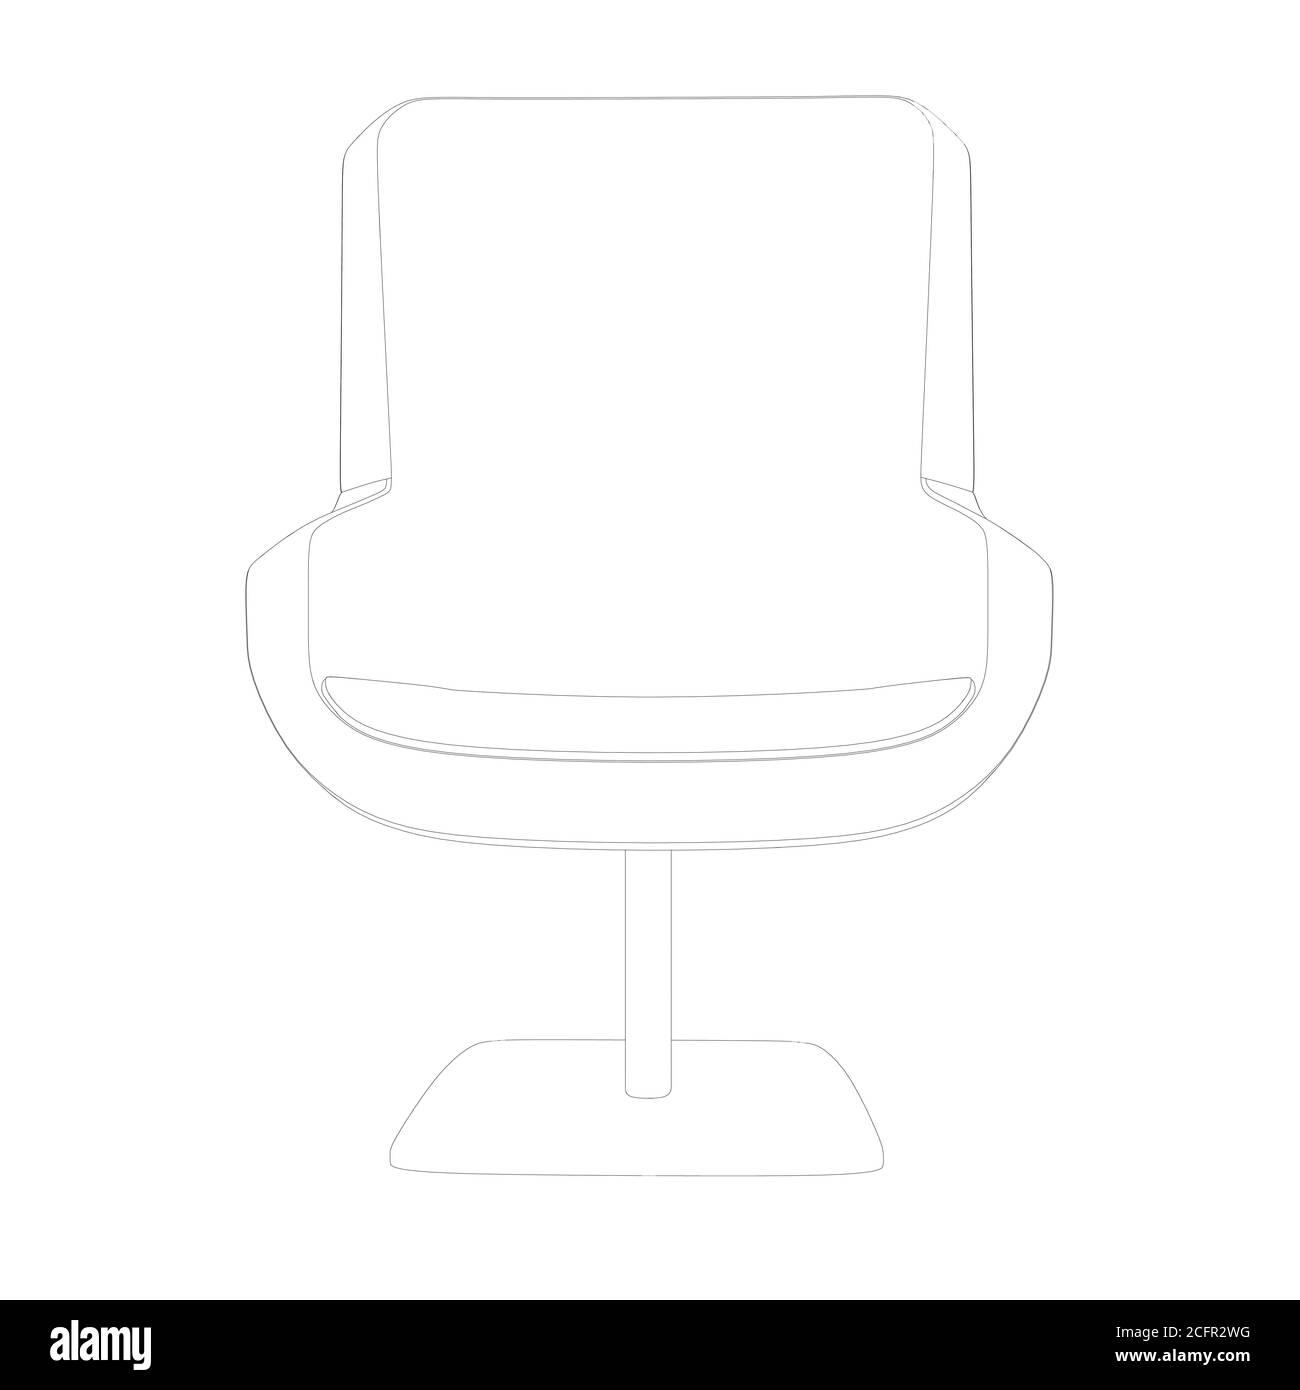 Kontur eines bequemen Stuhls aus schwarzen Linien isoliert auf weißem Hintergrund. Vorderansicht. Vektorgrafik Stock Vektor